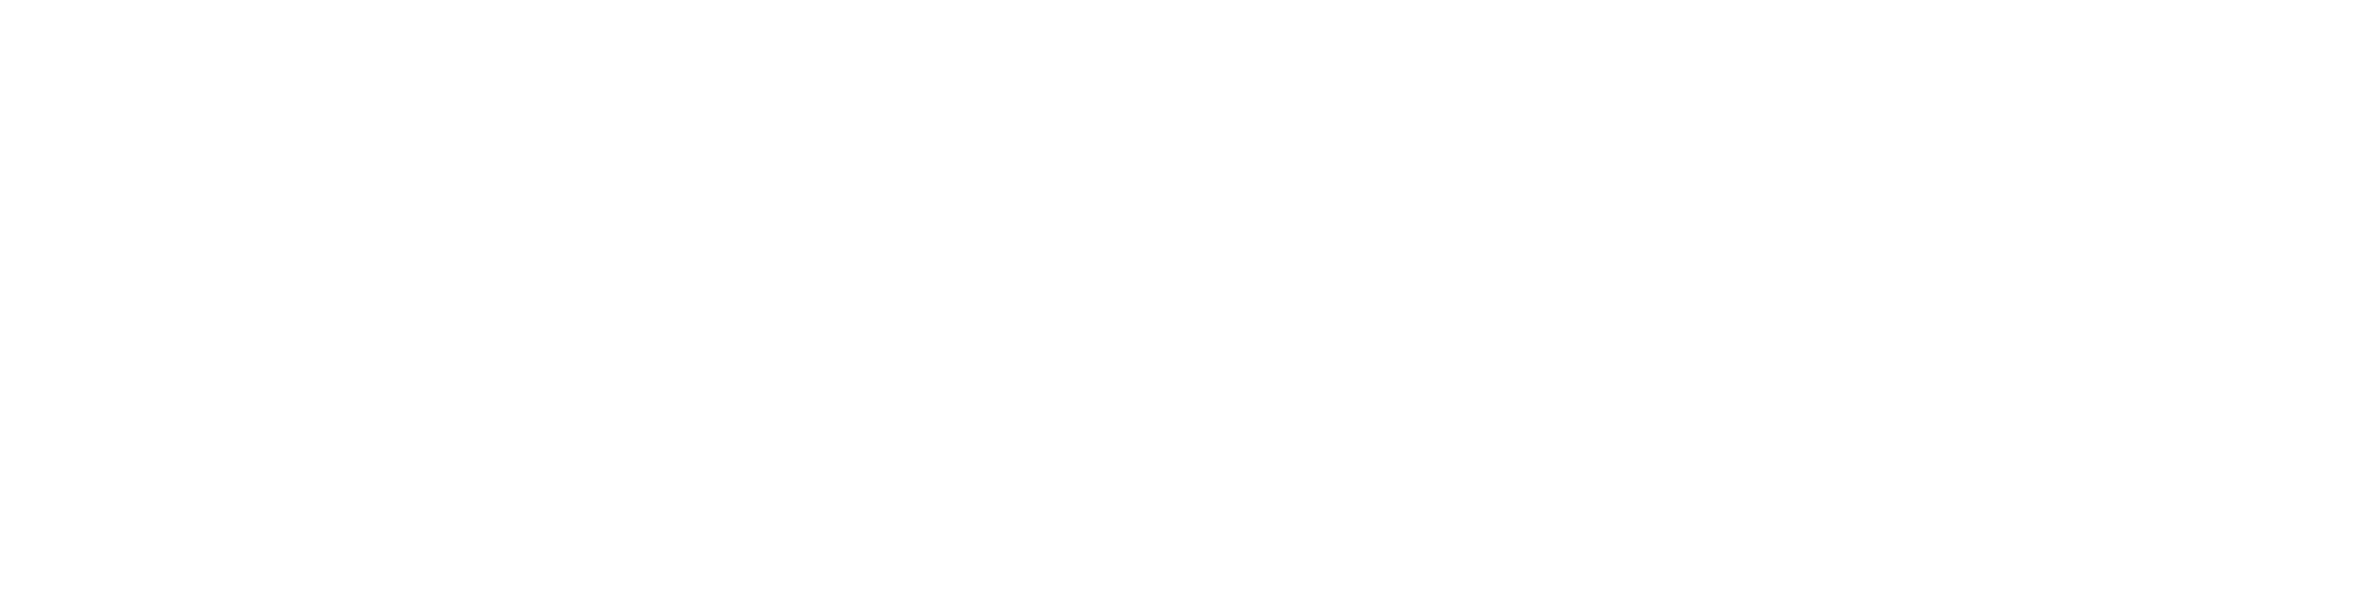 Delrieu